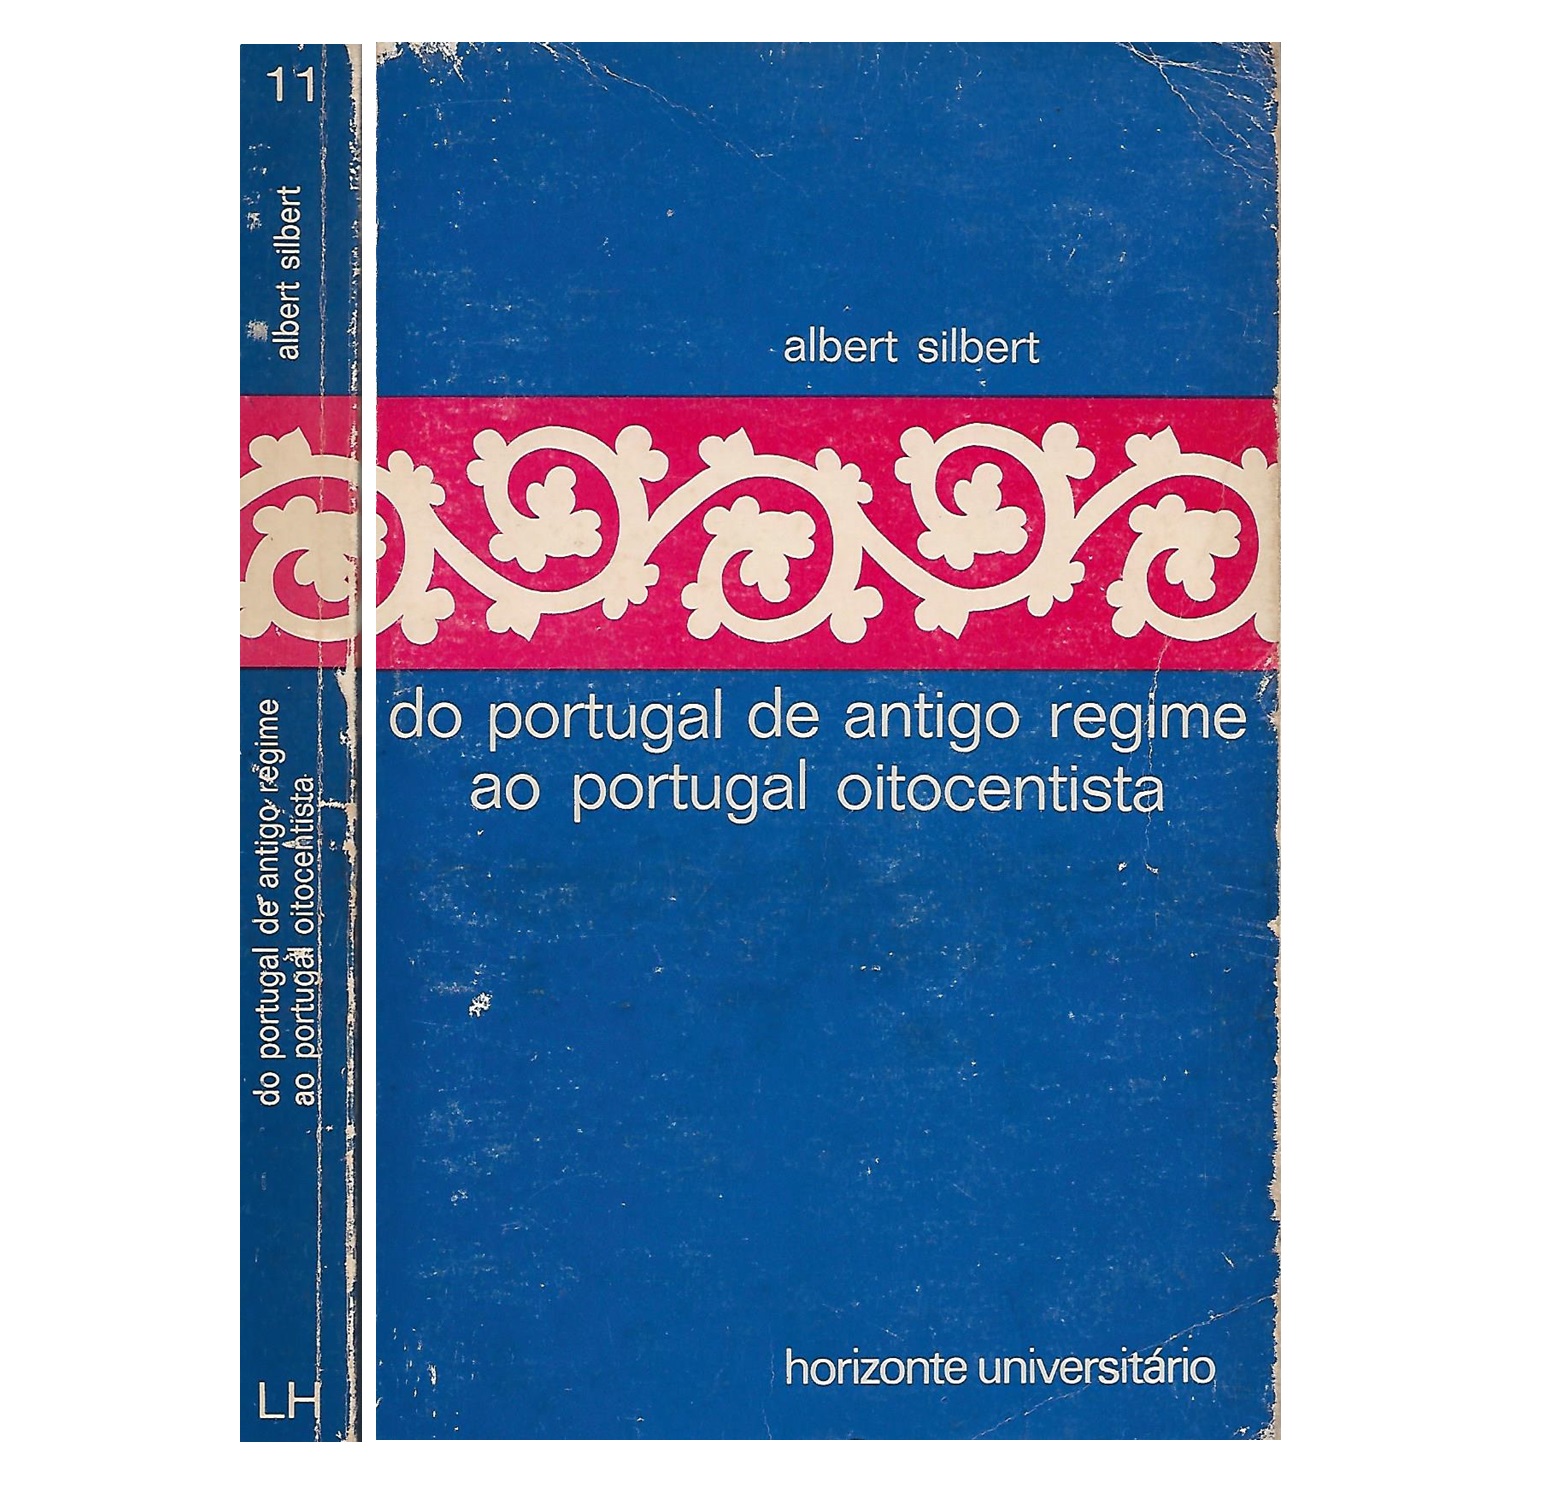 DO PORTUGAL DE ANTIGO REGIME AO PORTUGAL OITOCENTISTA.